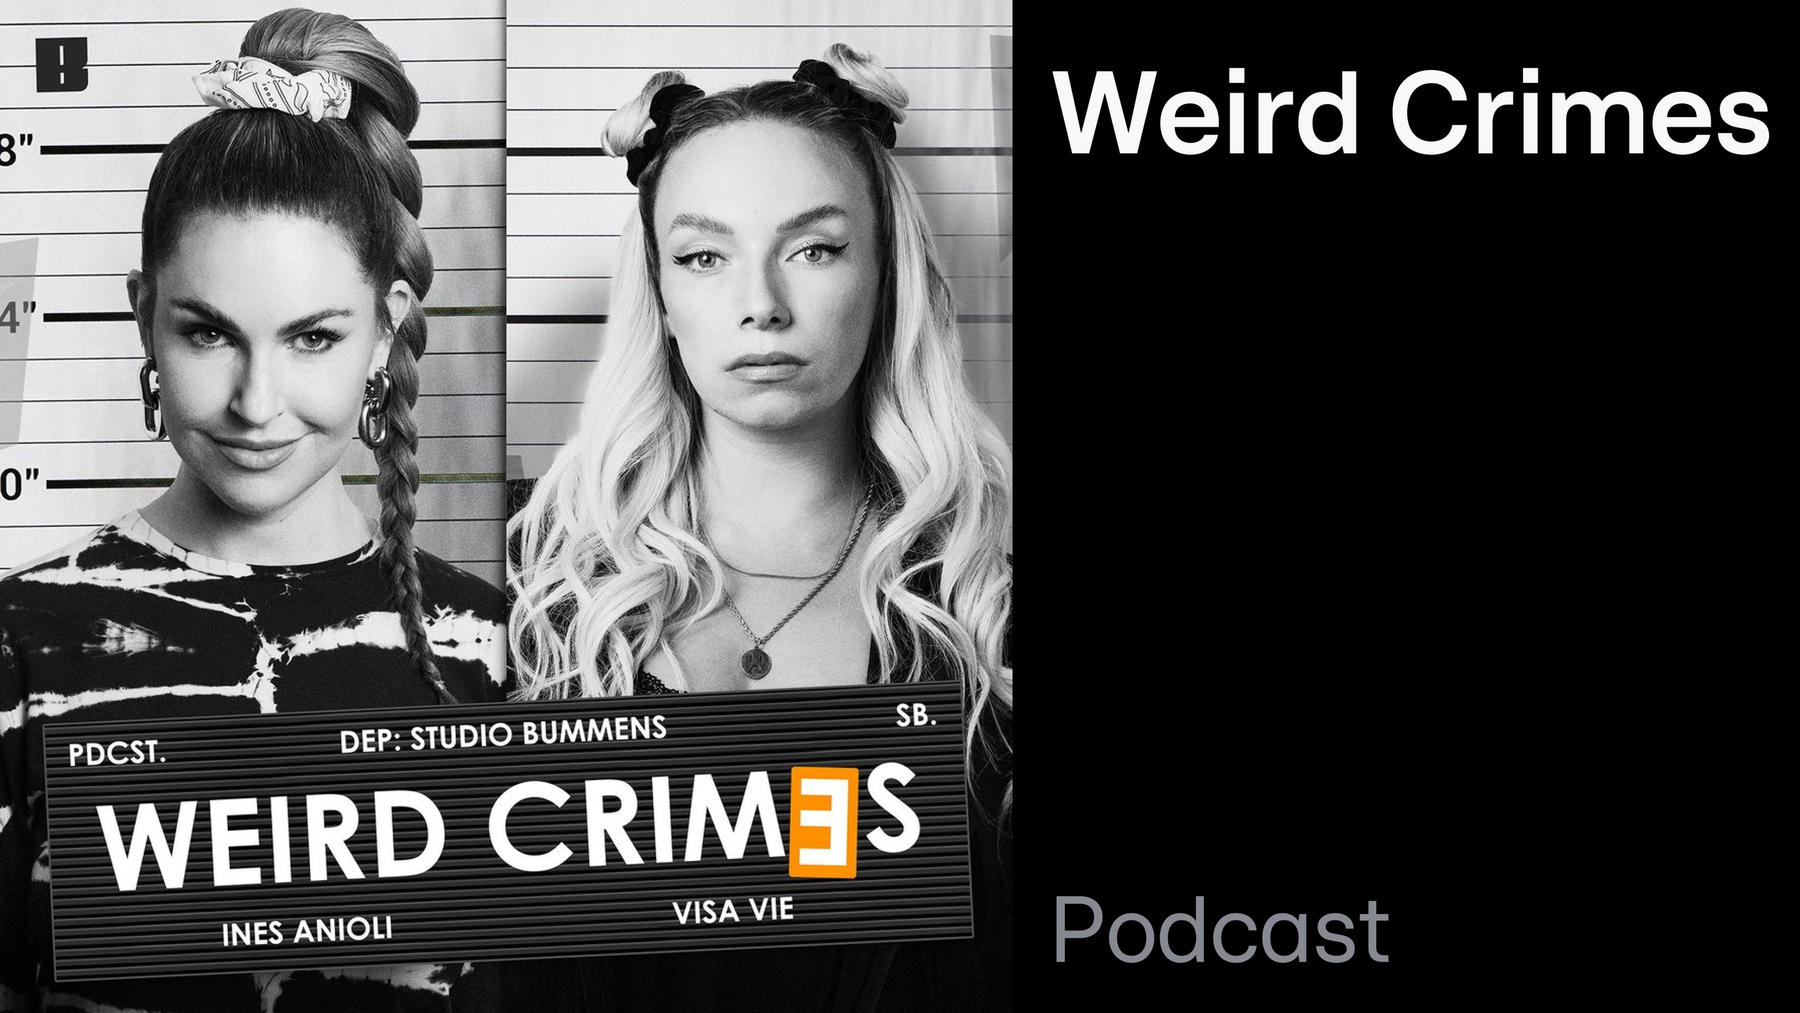 Podcast: Weird Crimes